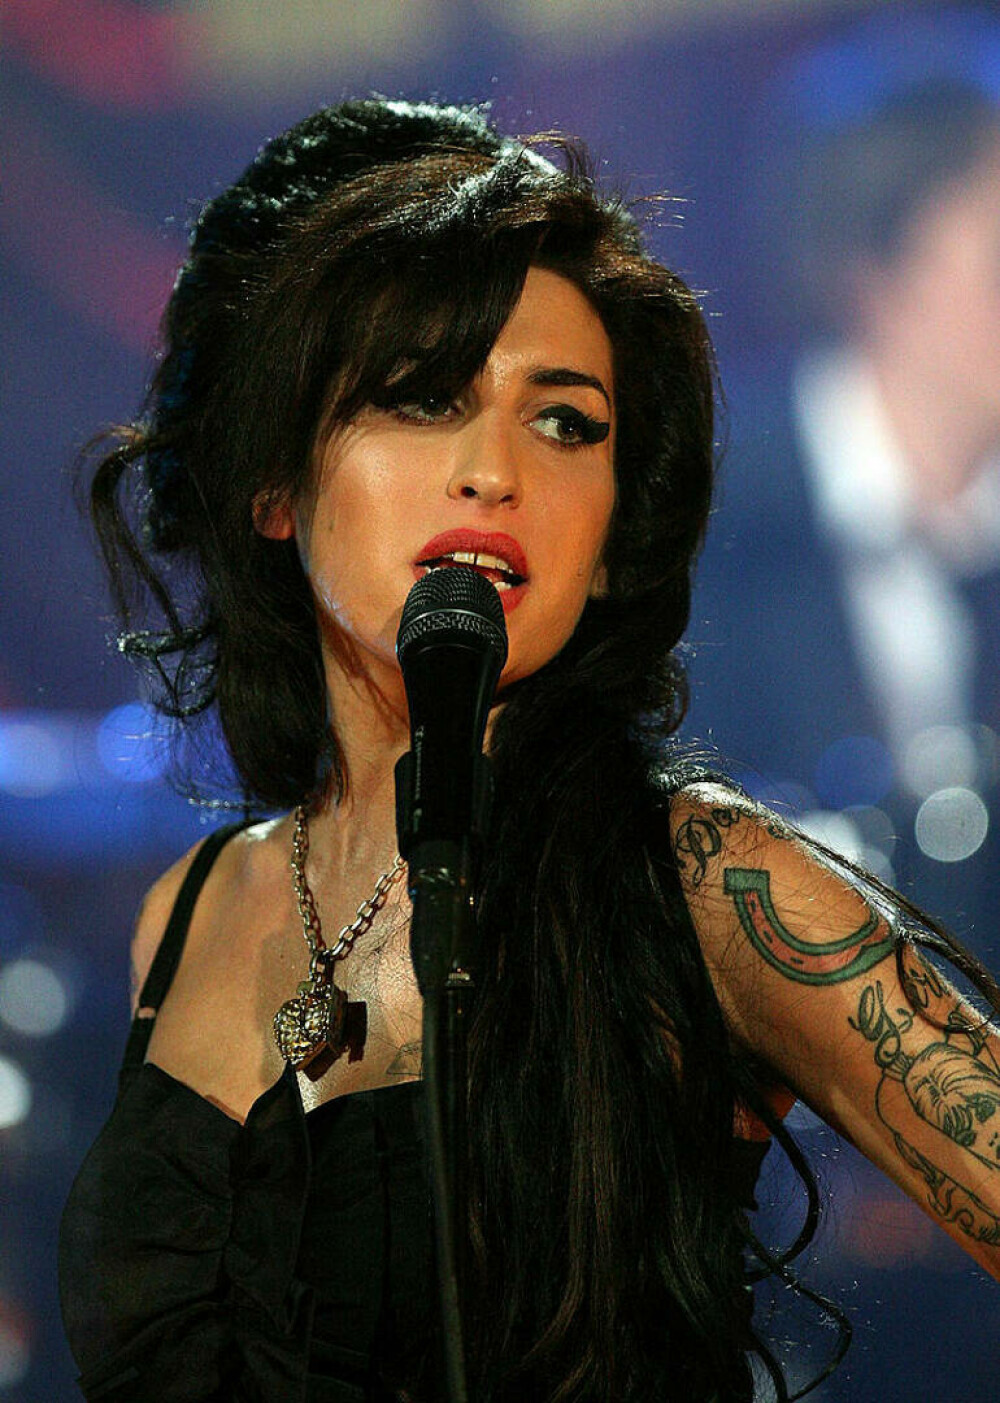 Imagini de colecție cu Amy Winehouse. Cântăreața ar fi împlinit astăzi 40 de ani | FOTO - Imaginea 7